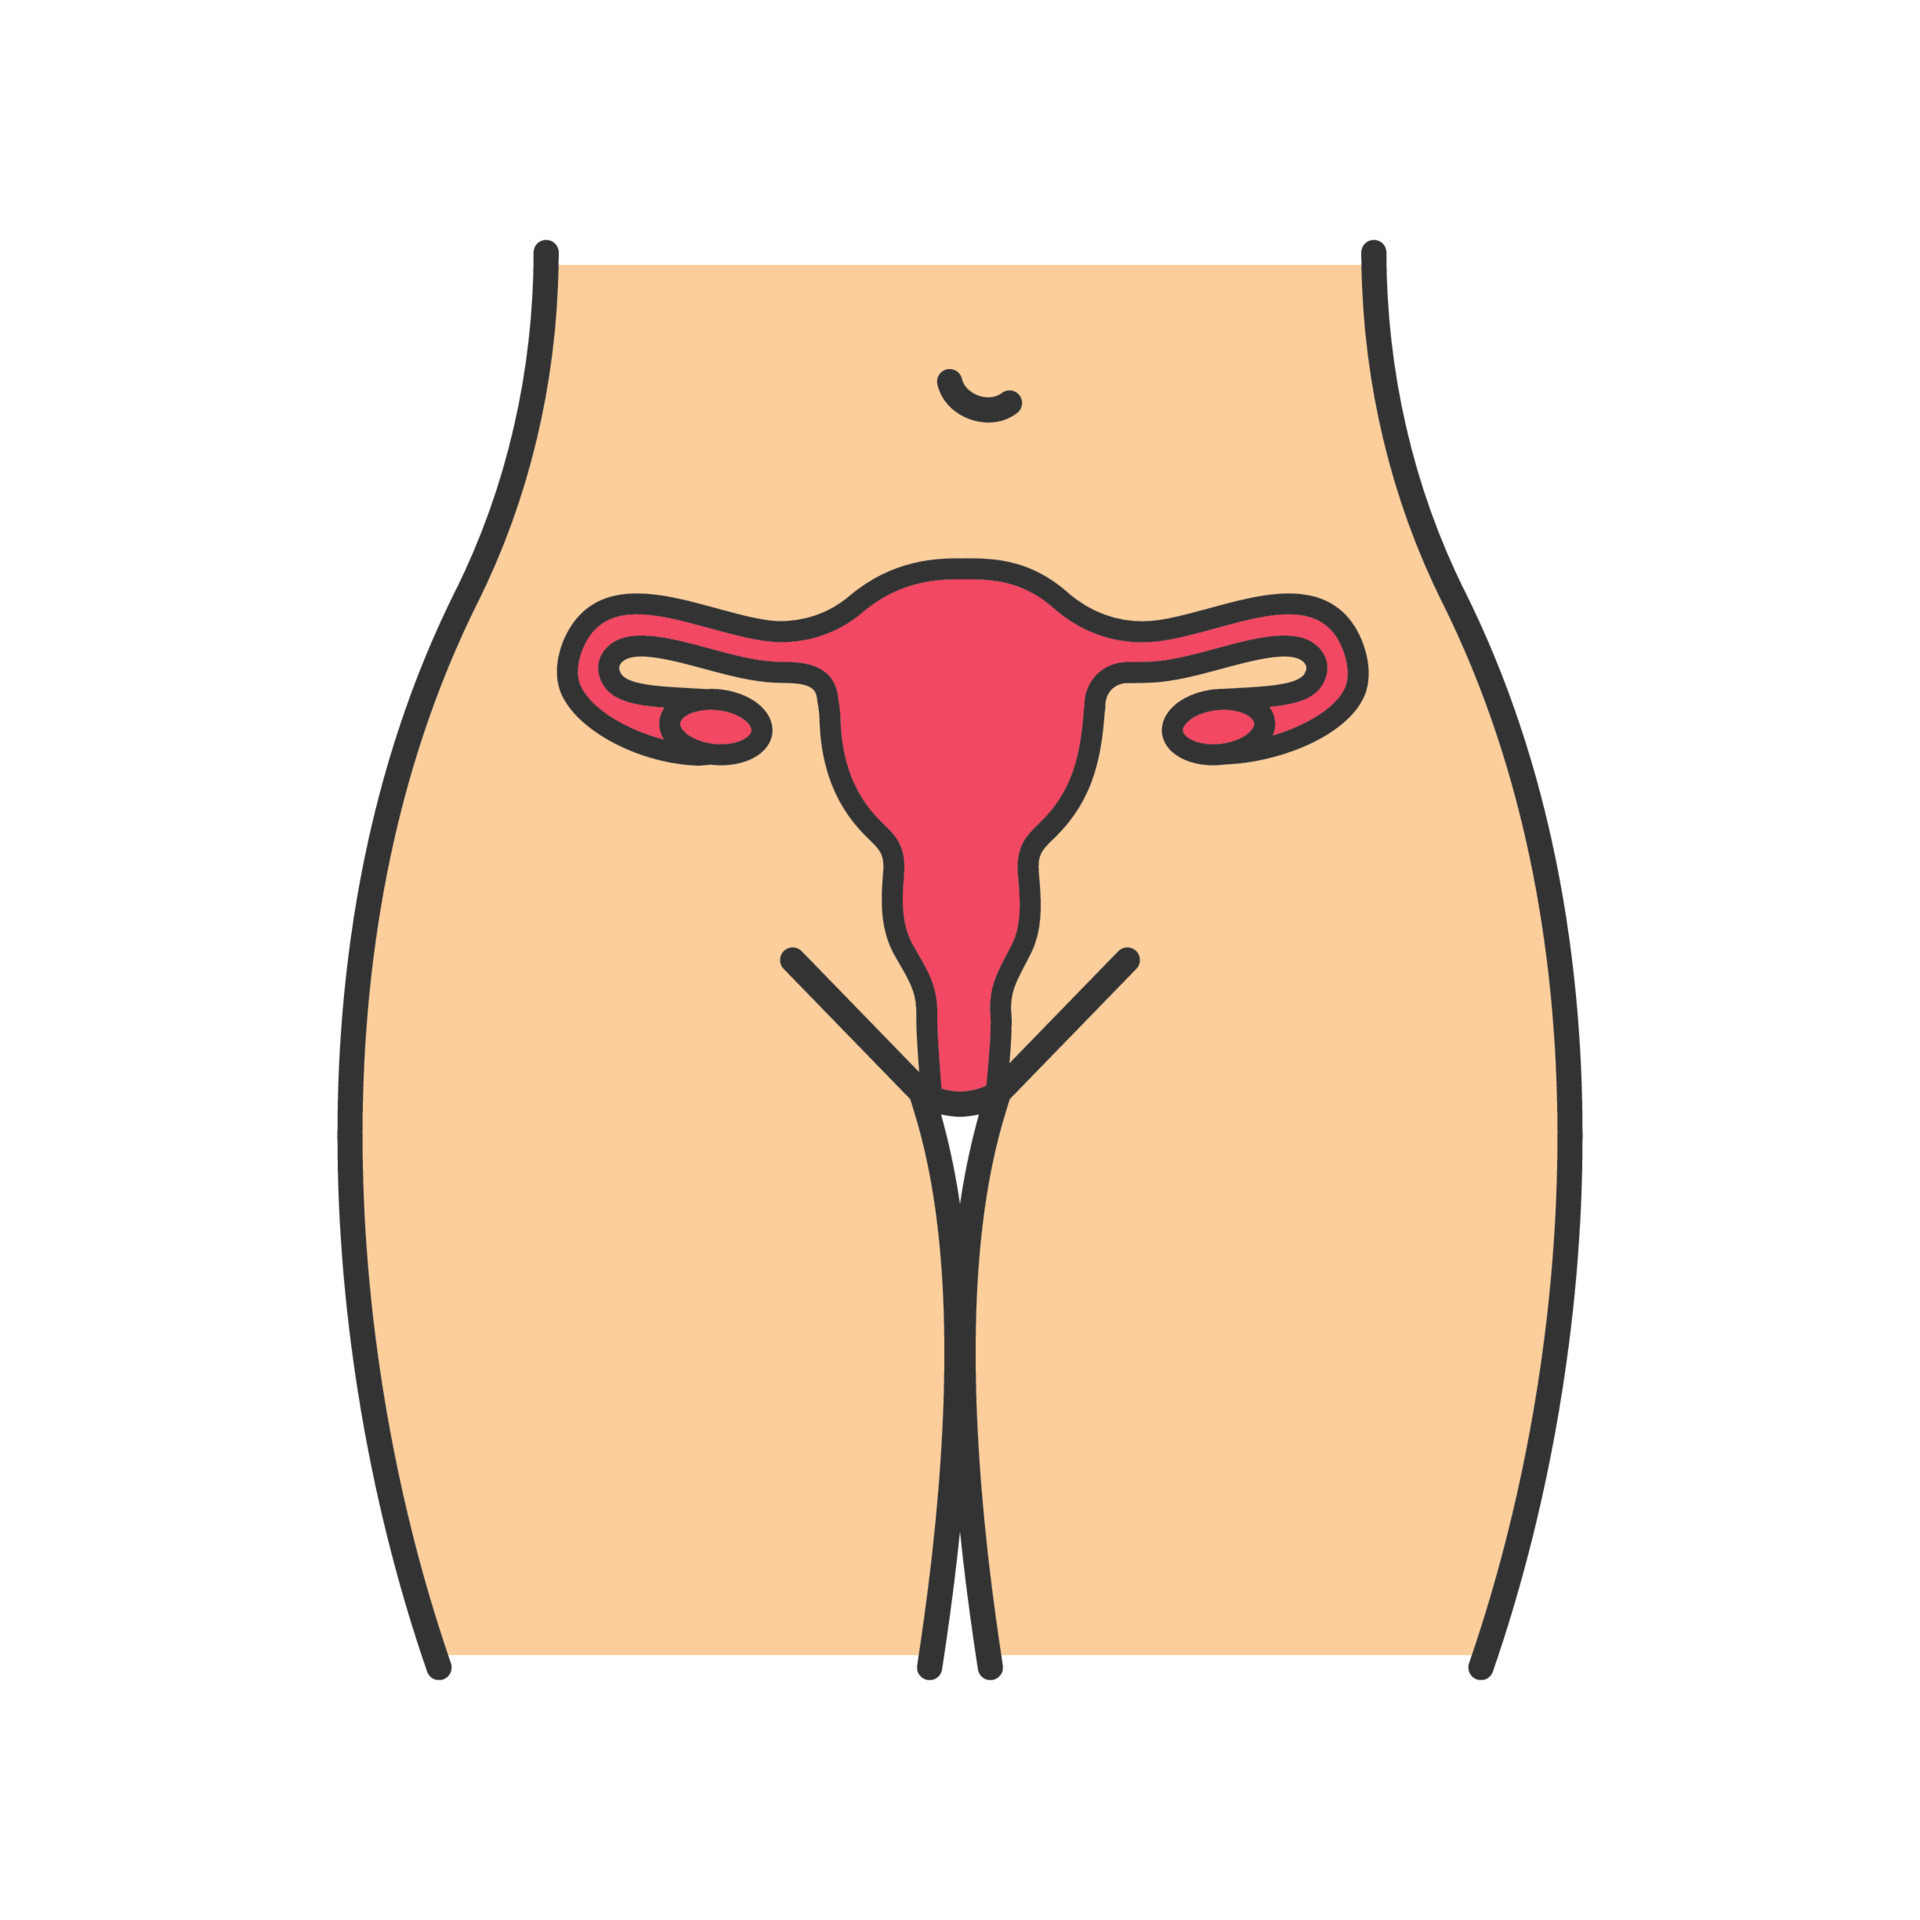 vrouwelijke reproductieve systeem kleur icoon. baarmoeder, eileiders en vagina. gezondheid van vrouwen